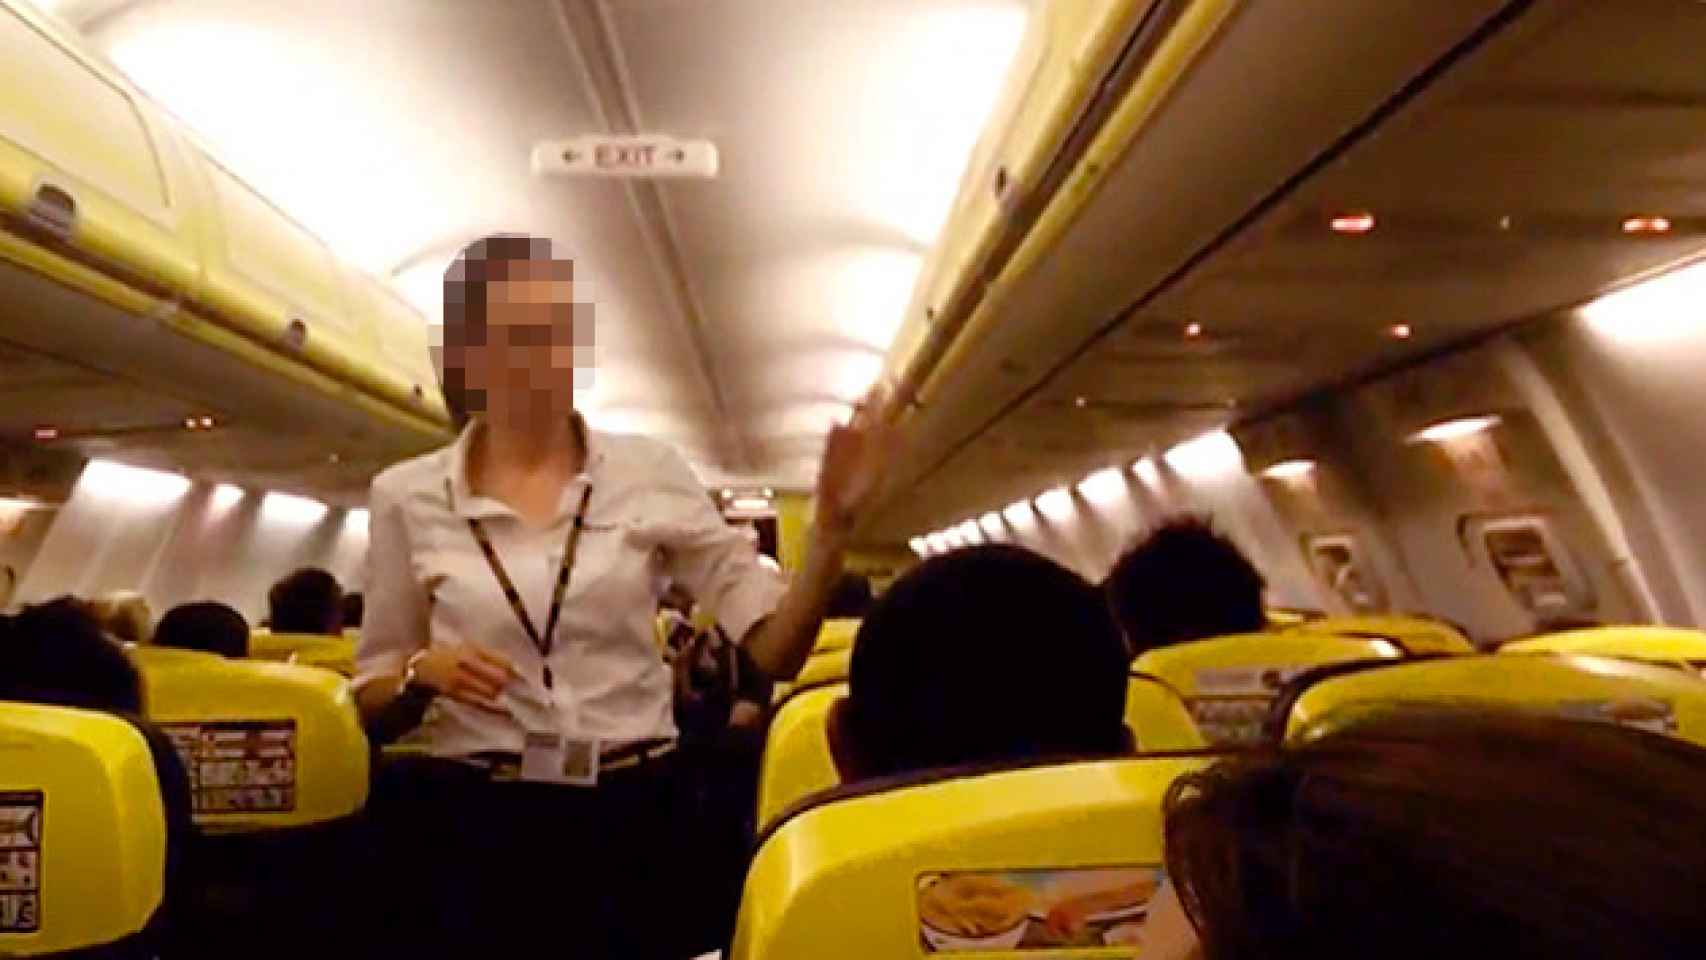 Una auxiliar cuenta pasajeros en el 'vuelo del infierno' de Ryanair, que superó los 50 grados / CG